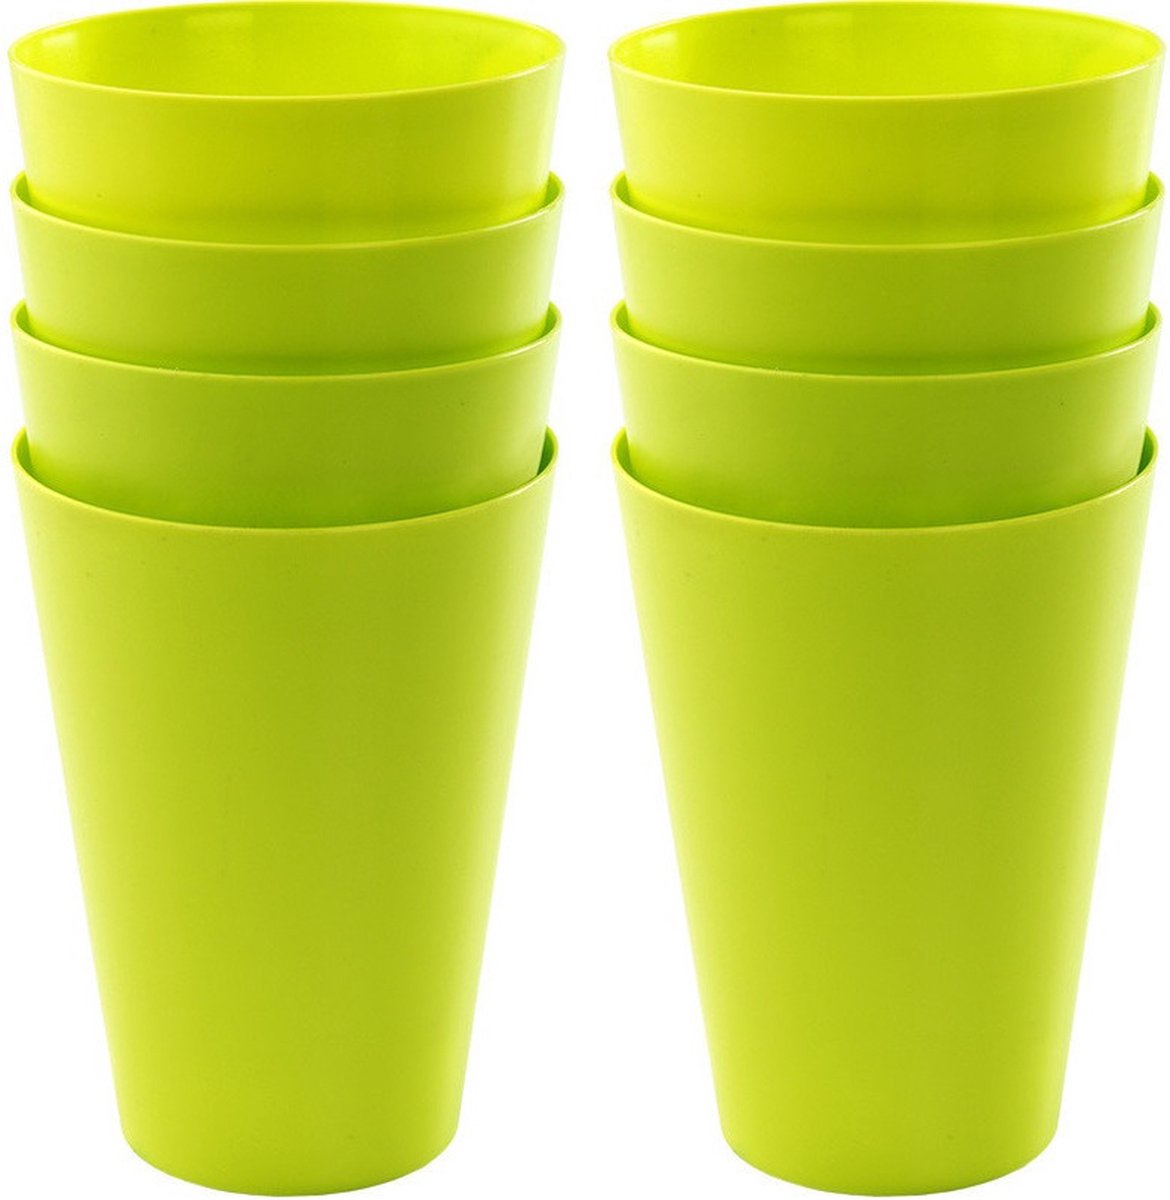 12x drinkbekers van kunststof 430 ml in het groen - Limonade bekers - Campingservies/picknickservies